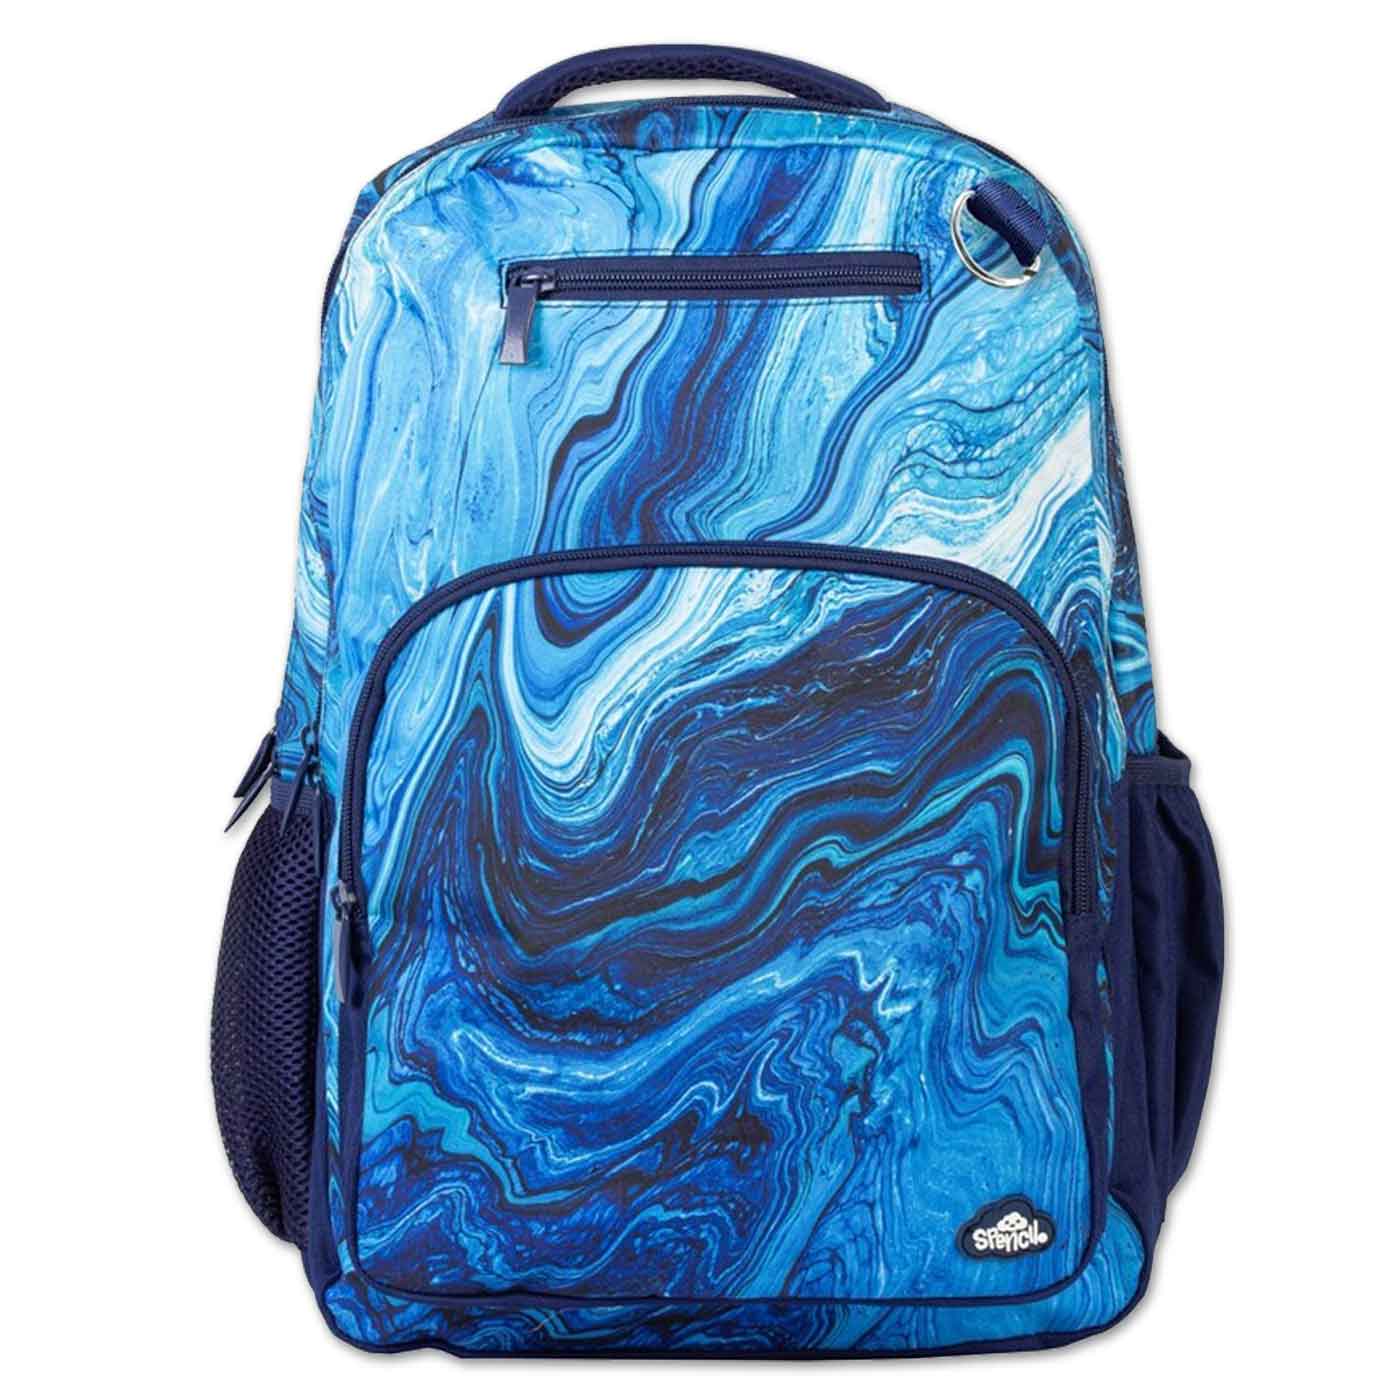 Spencil Backpack Ocean Marble 35 x 45cm